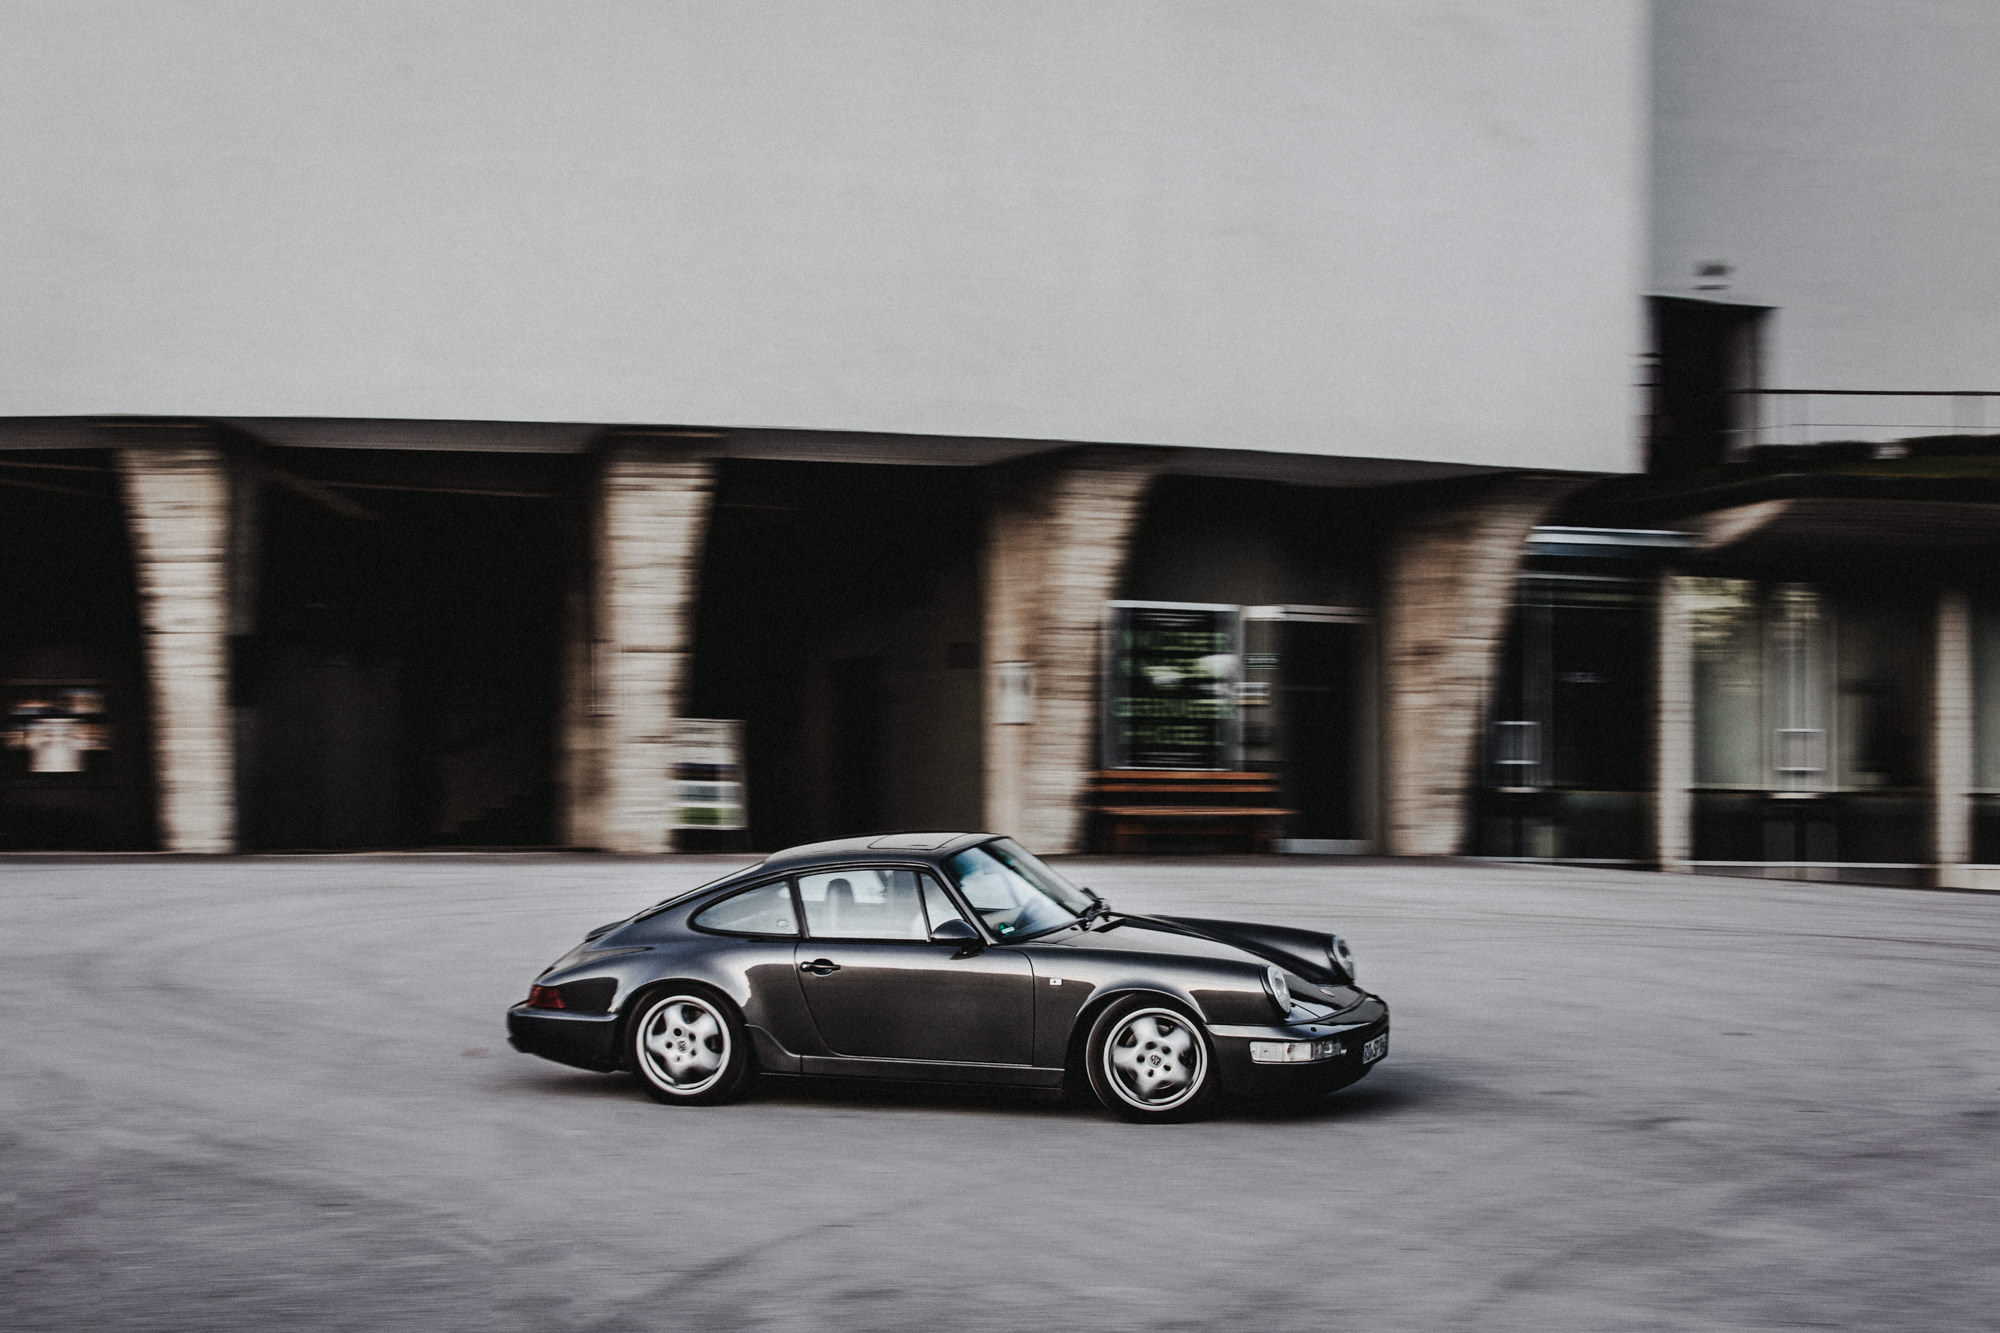 Andreas_Selter_Photography_Automotive_Porsche__5603